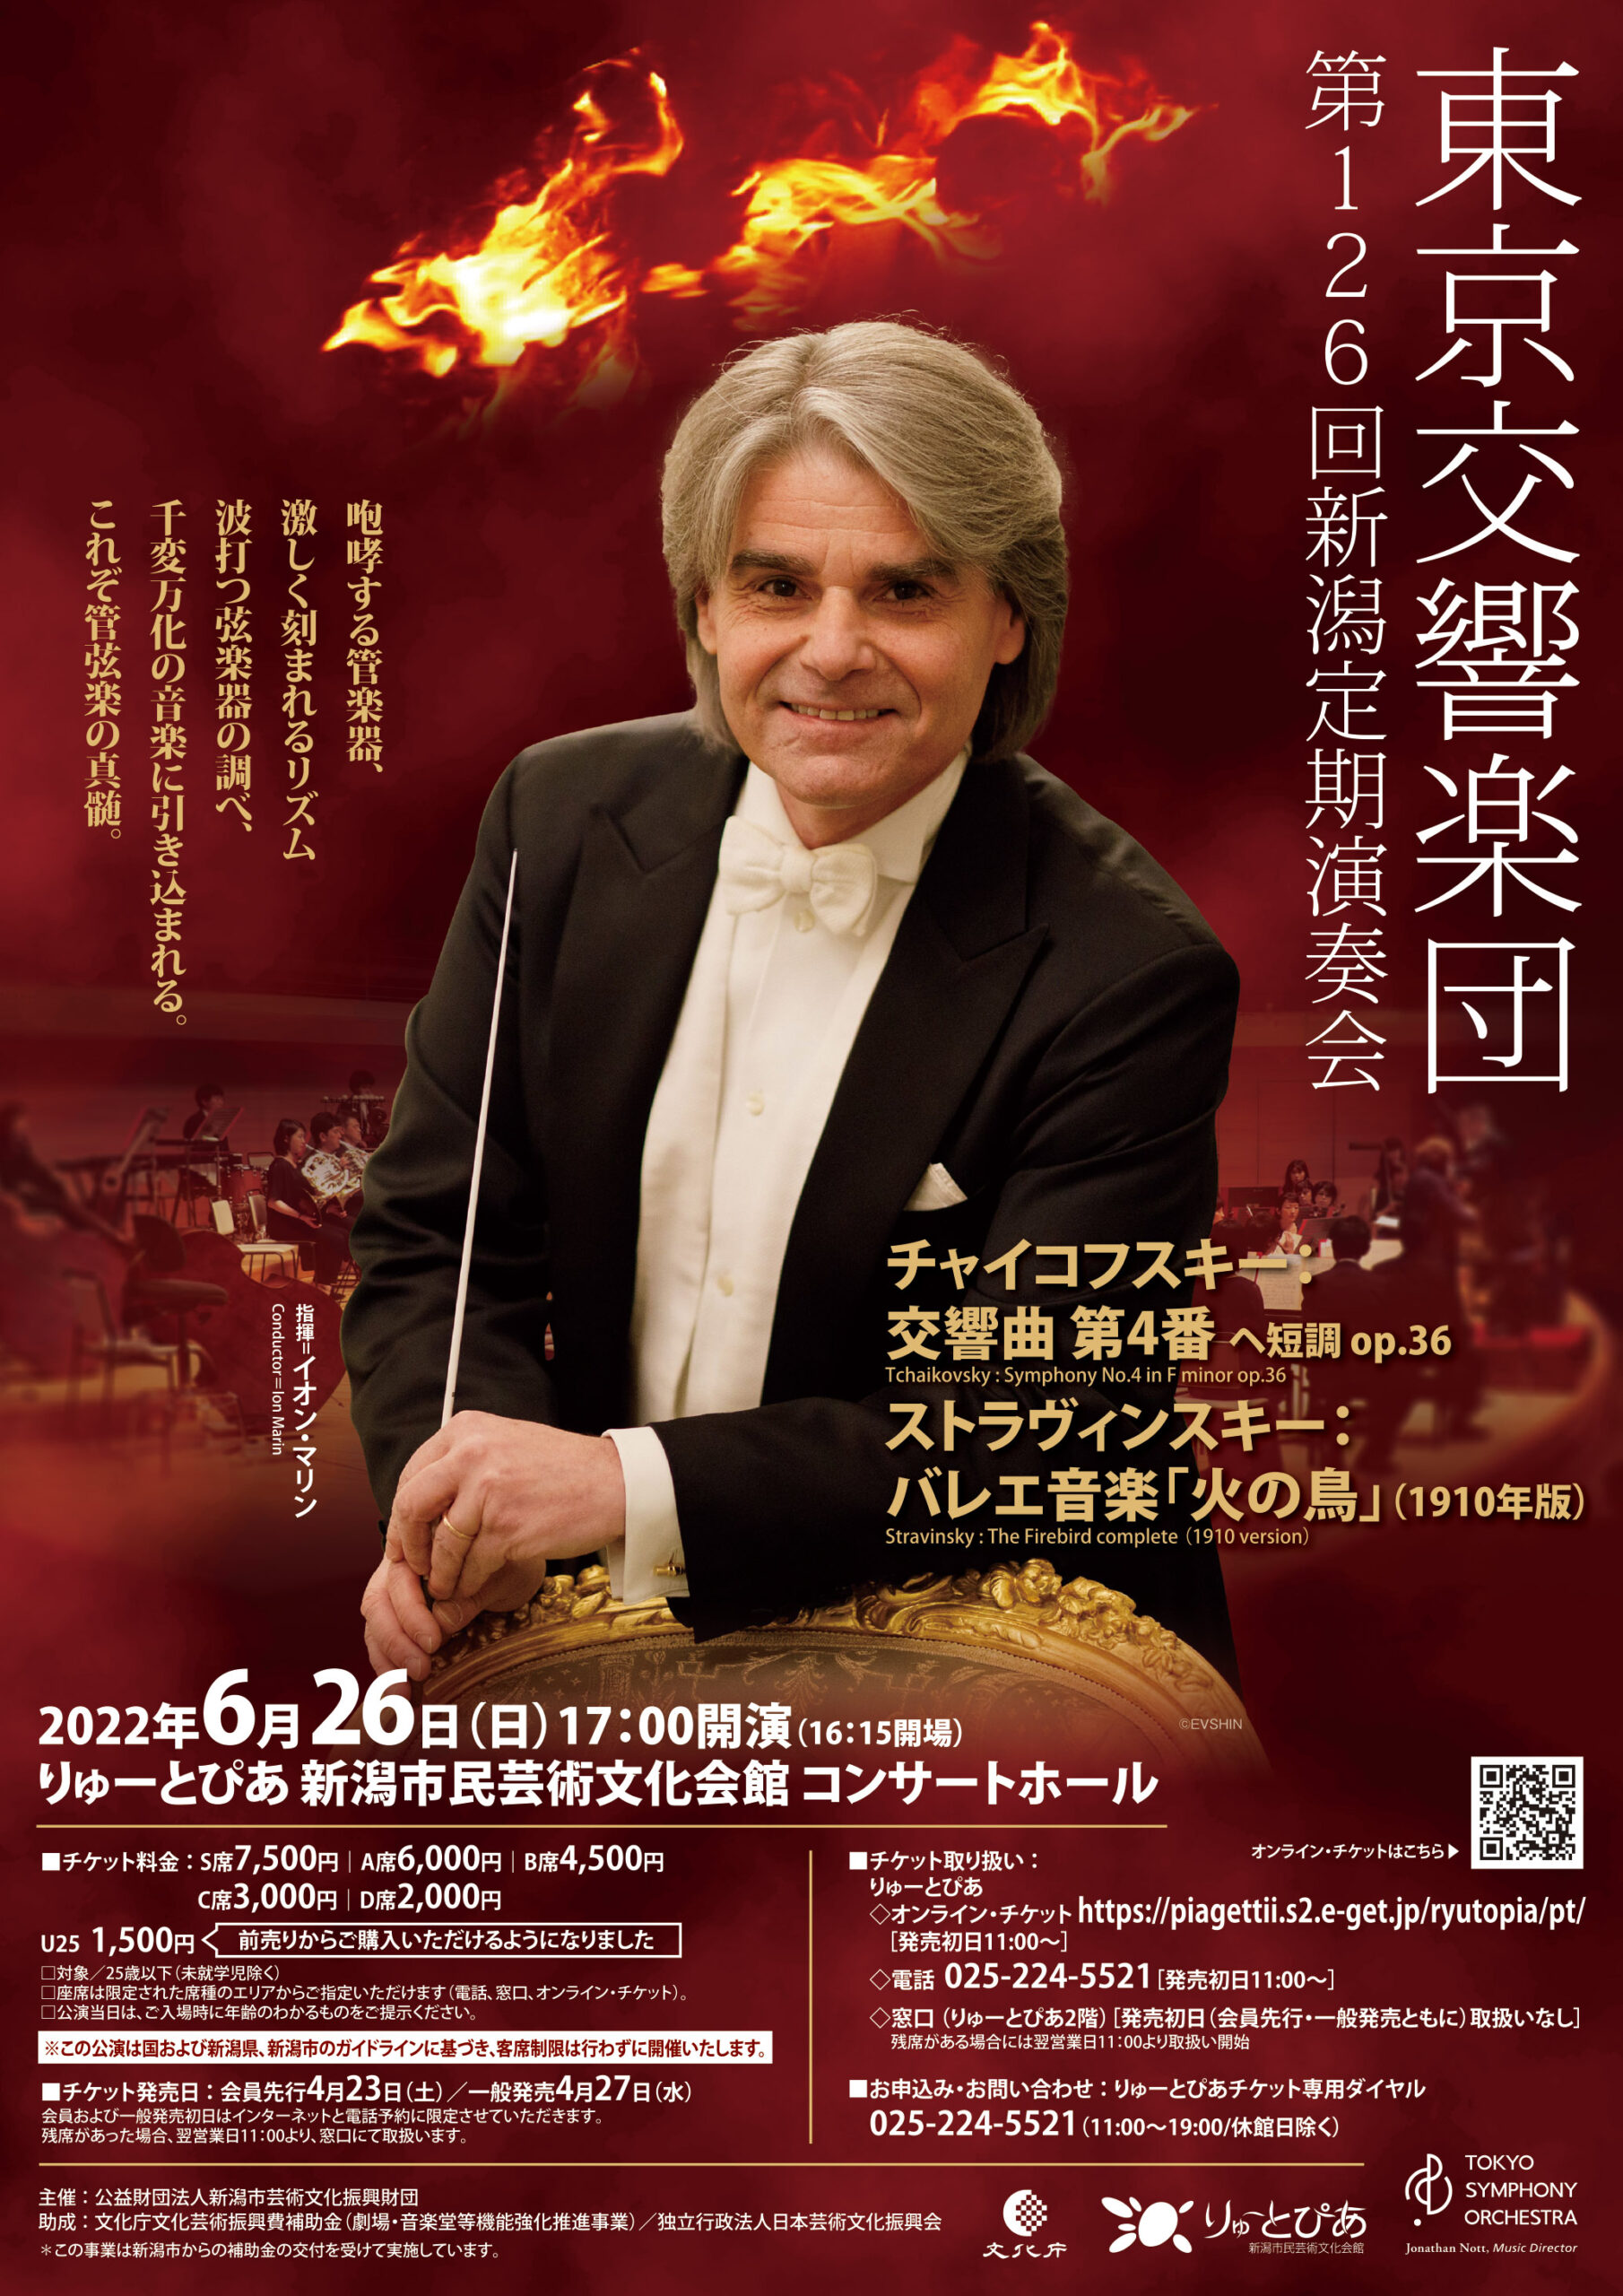 東京交響楽団 歌劇「サロメ」(演奏会形式) 2022年11月20日(日) 14:00 A席 2枚 - 興行チケット